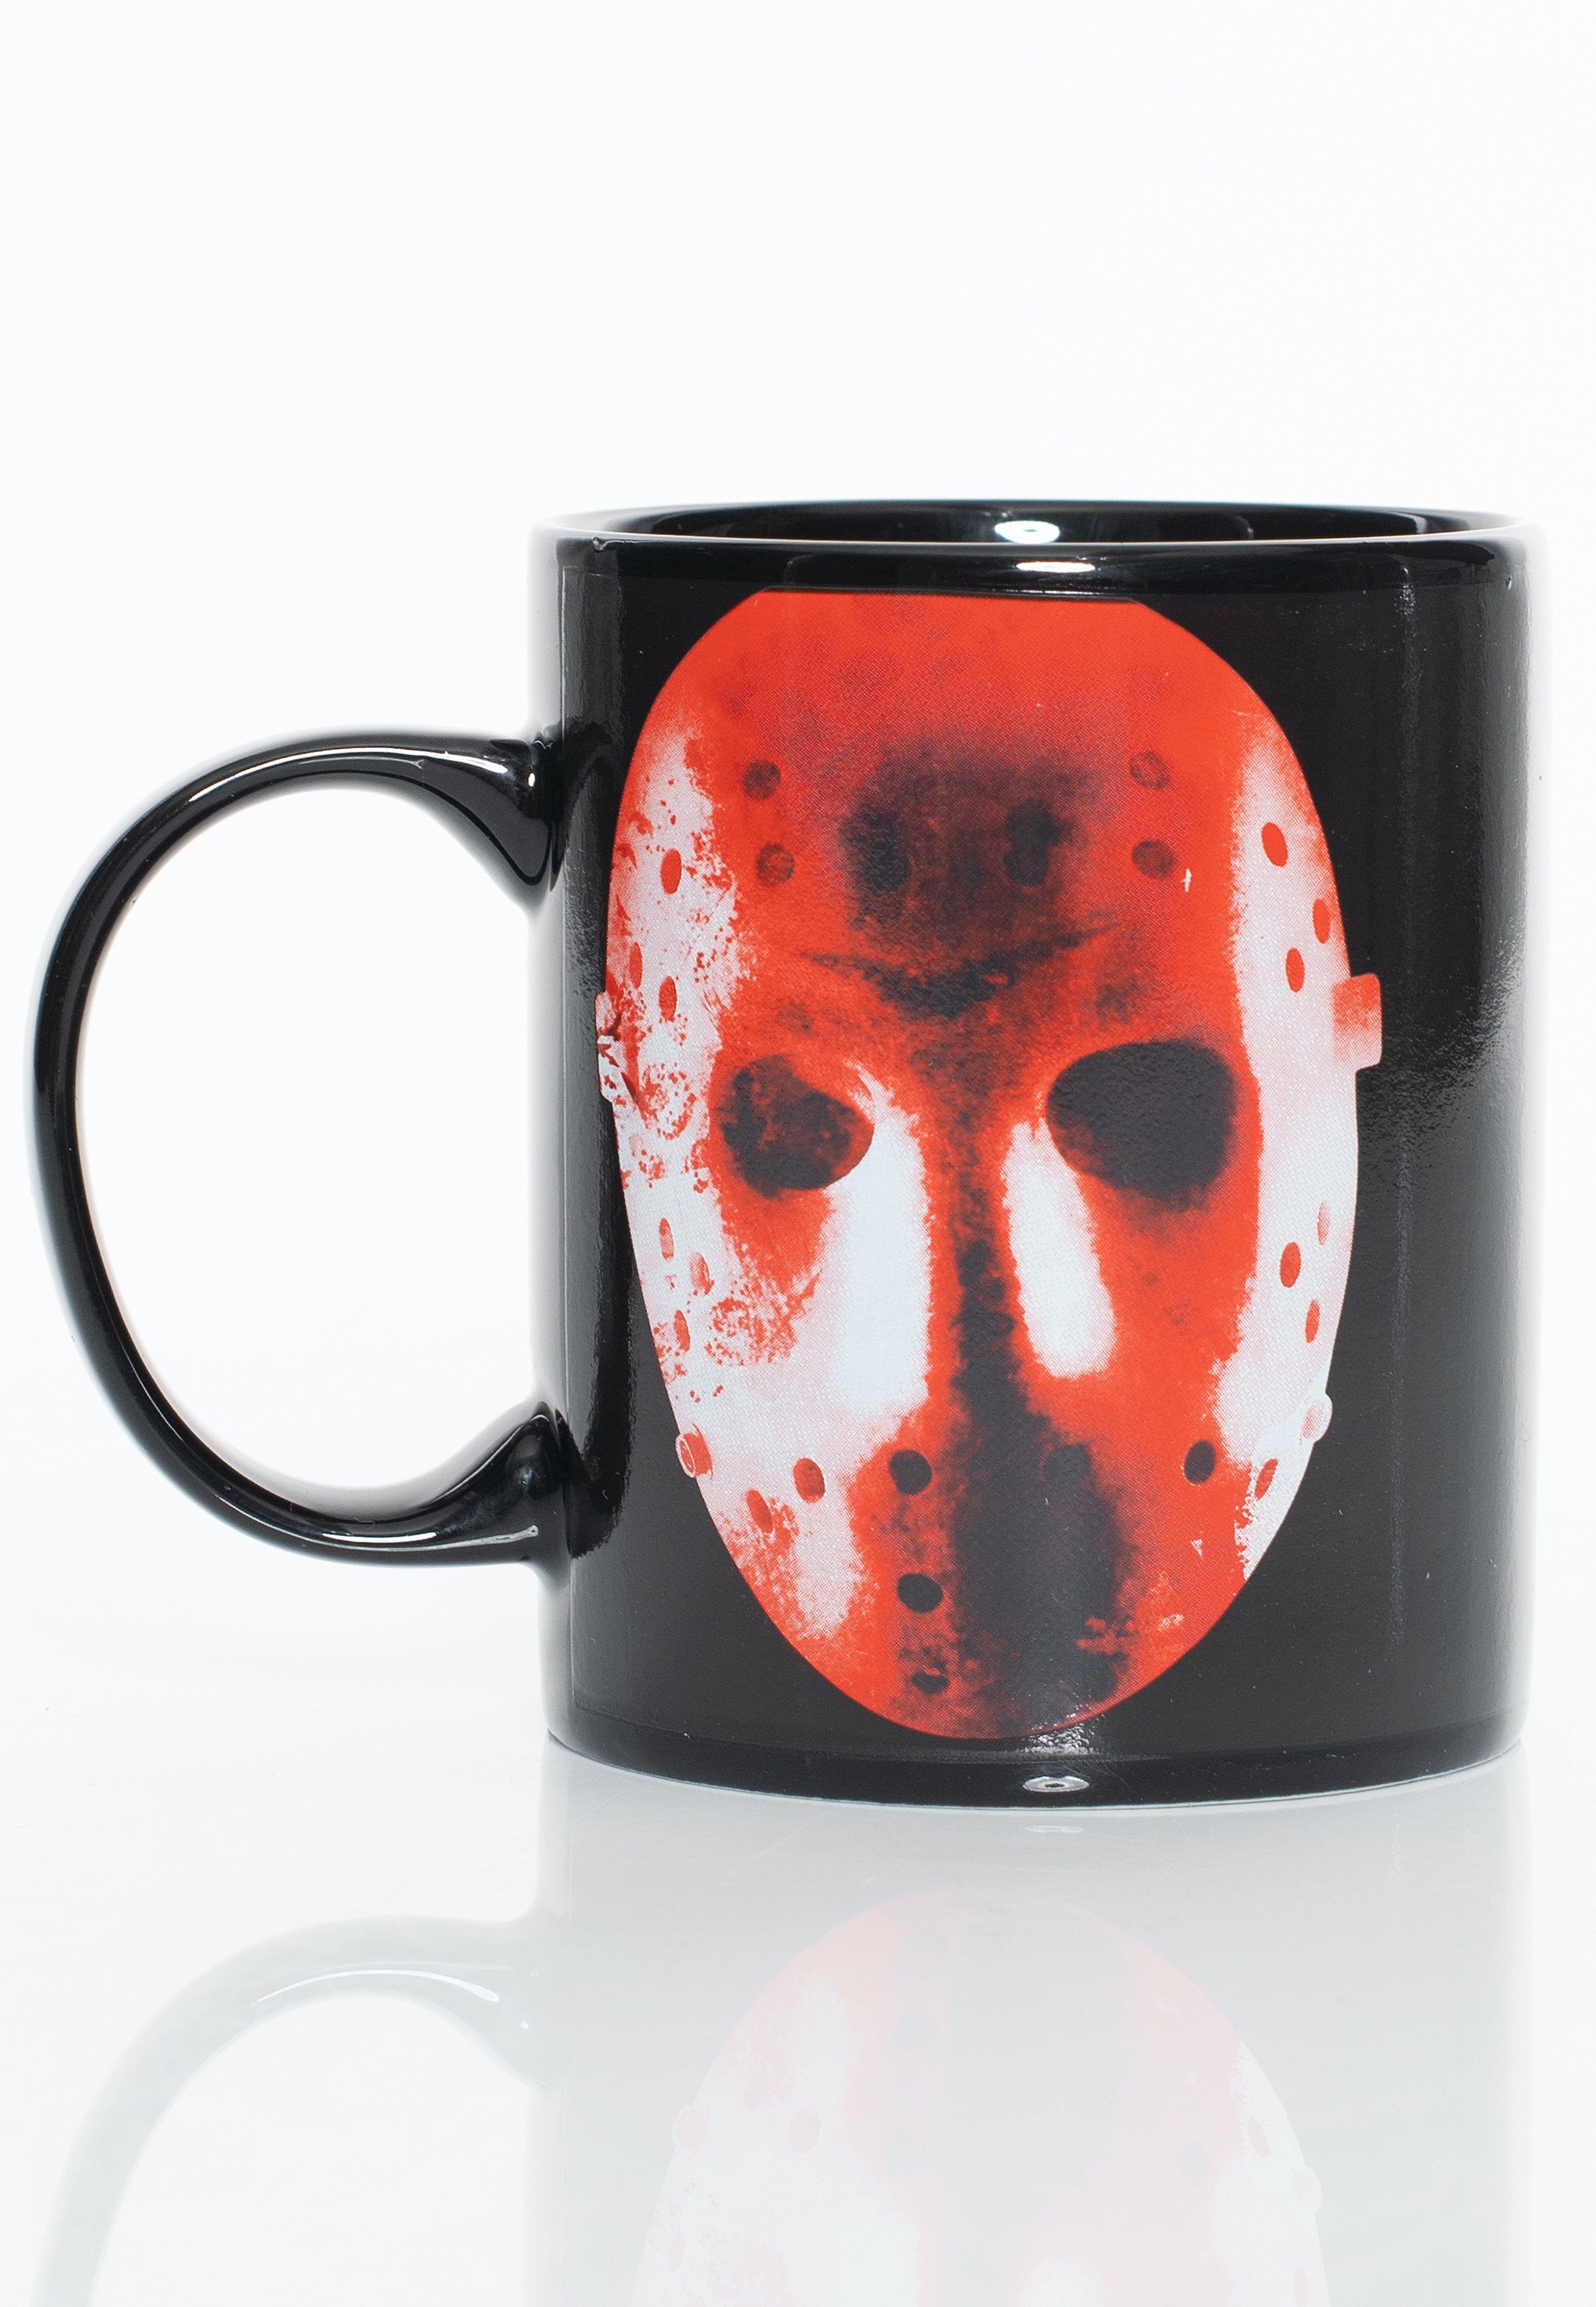 Friday The 13th - Crystal Lake - Mug